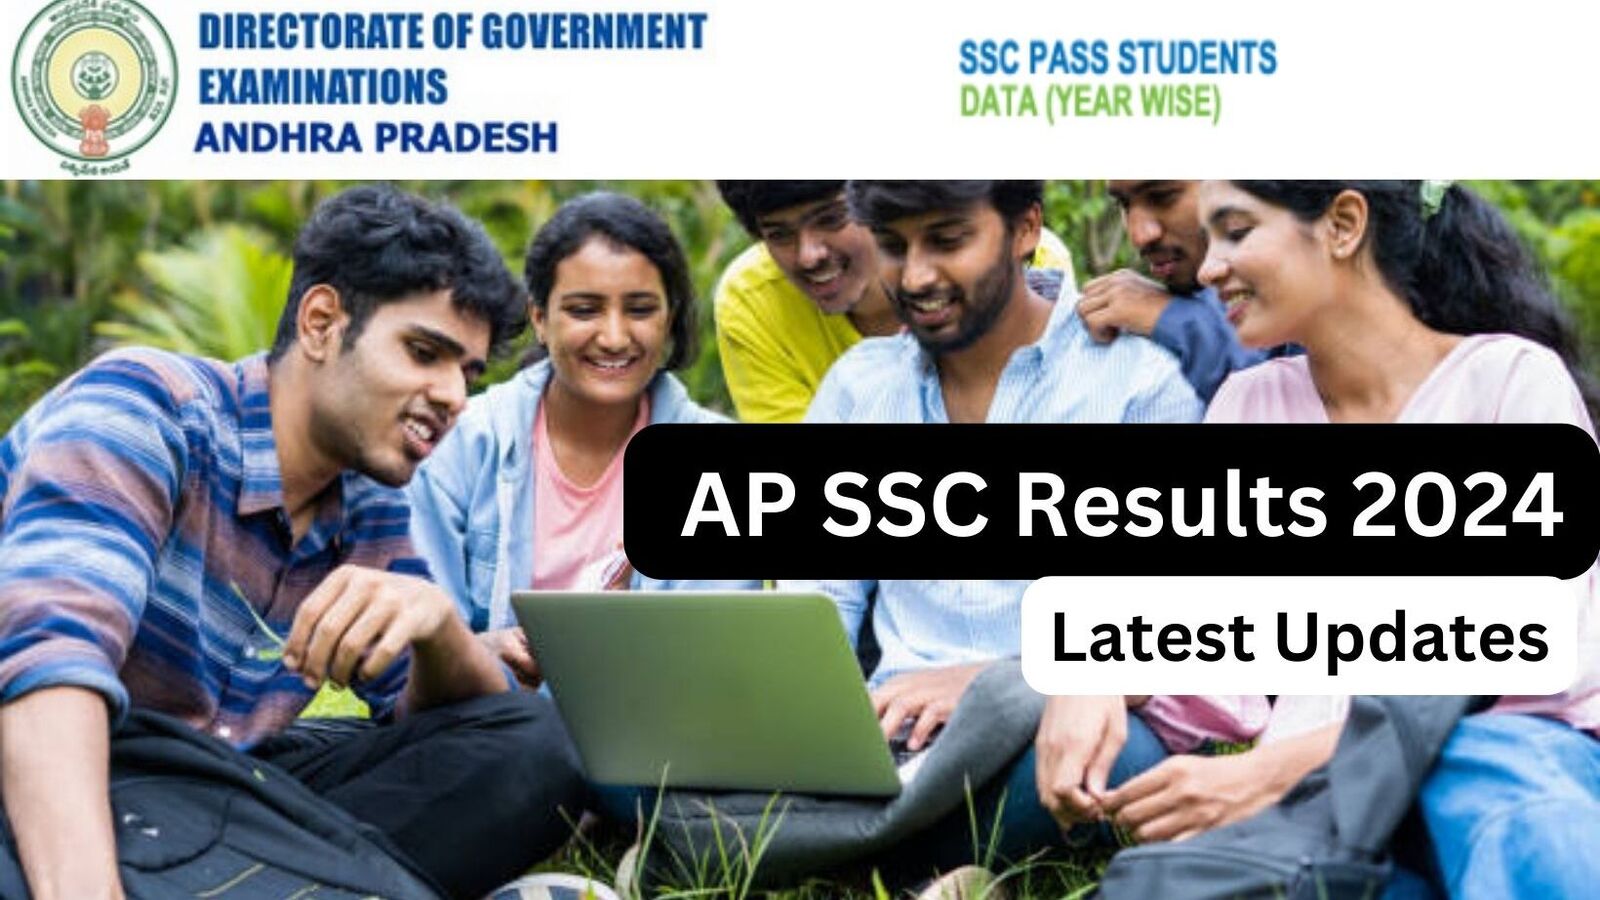 AP SSC Results 2024 Live : ఉదయం 11 గంటలకు ఏపీ పదో తరగతి ఫలితాలు - తాజా అప్డేట్స్